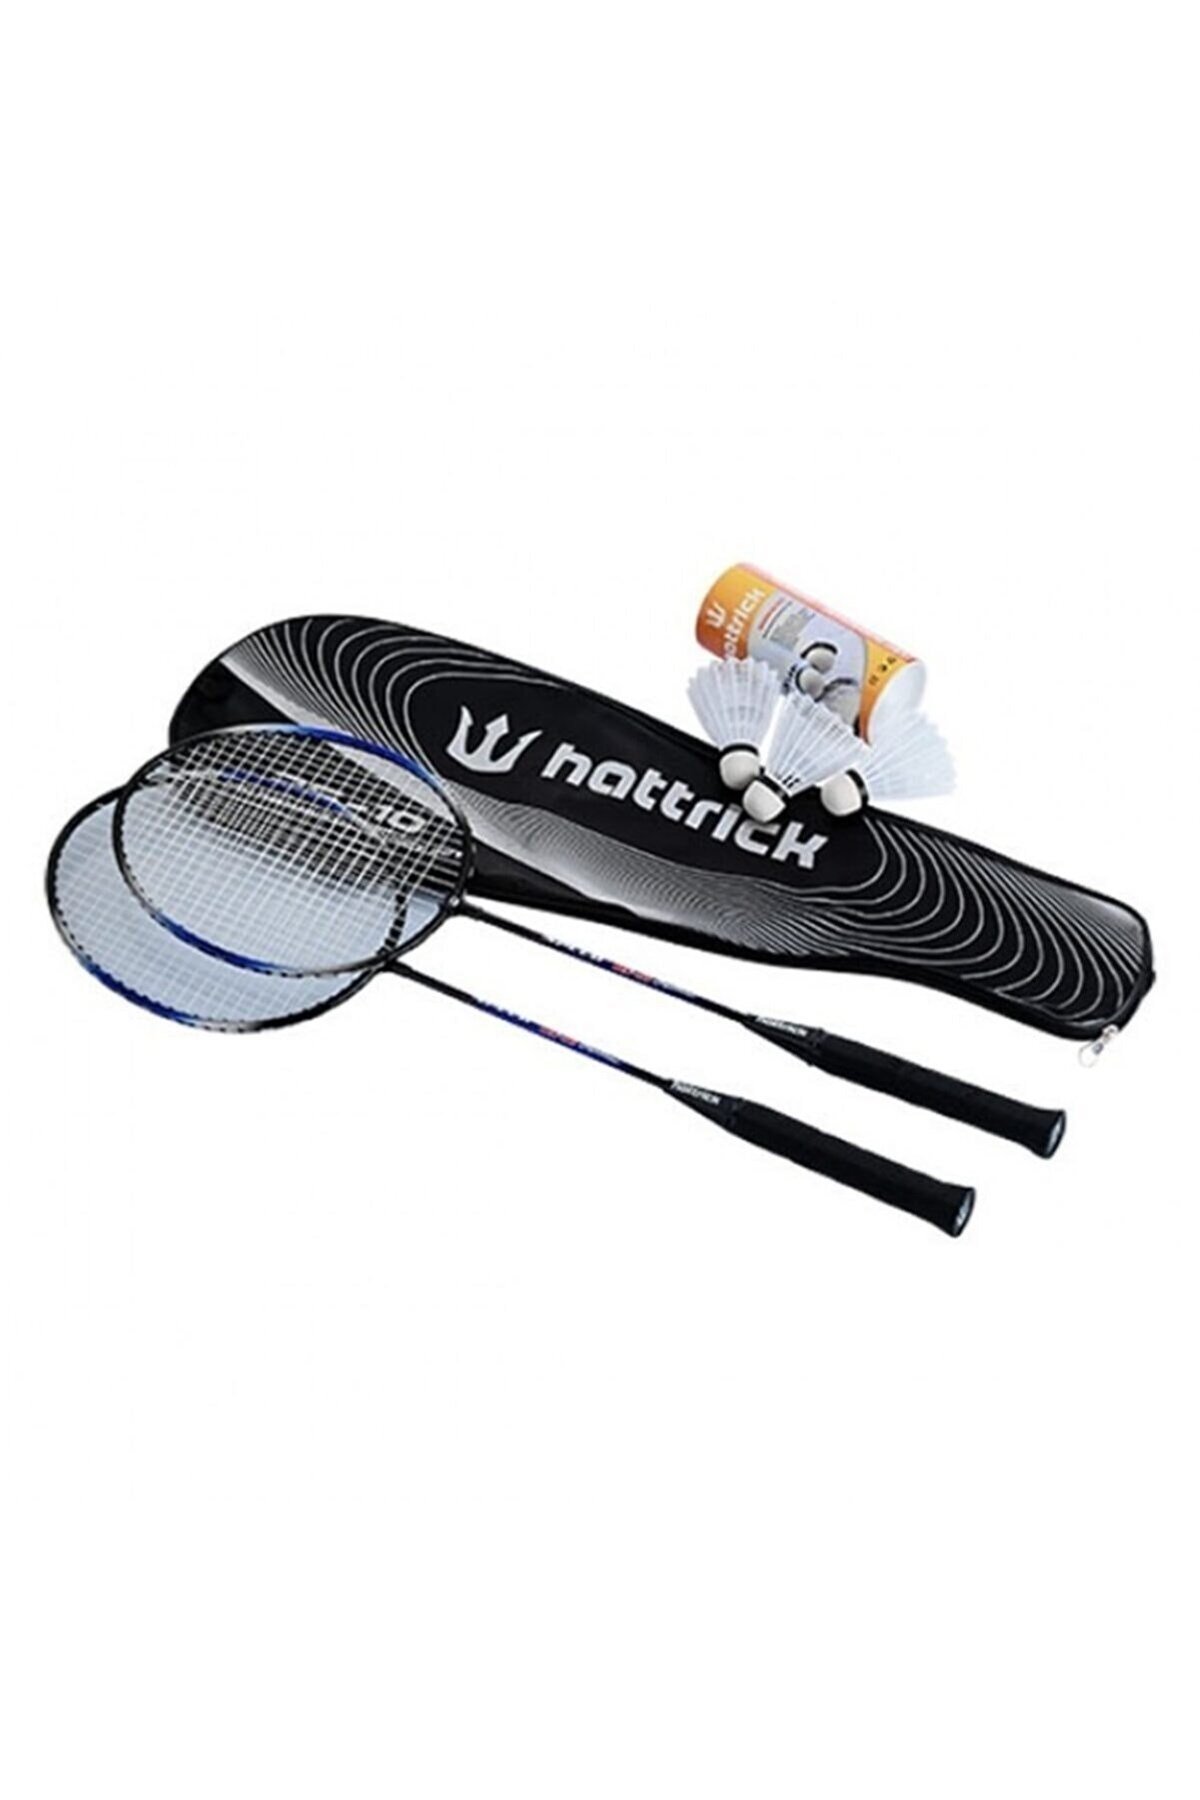 Hattrick BS-10 PRO Badminton 2 Raket 3 Top Set